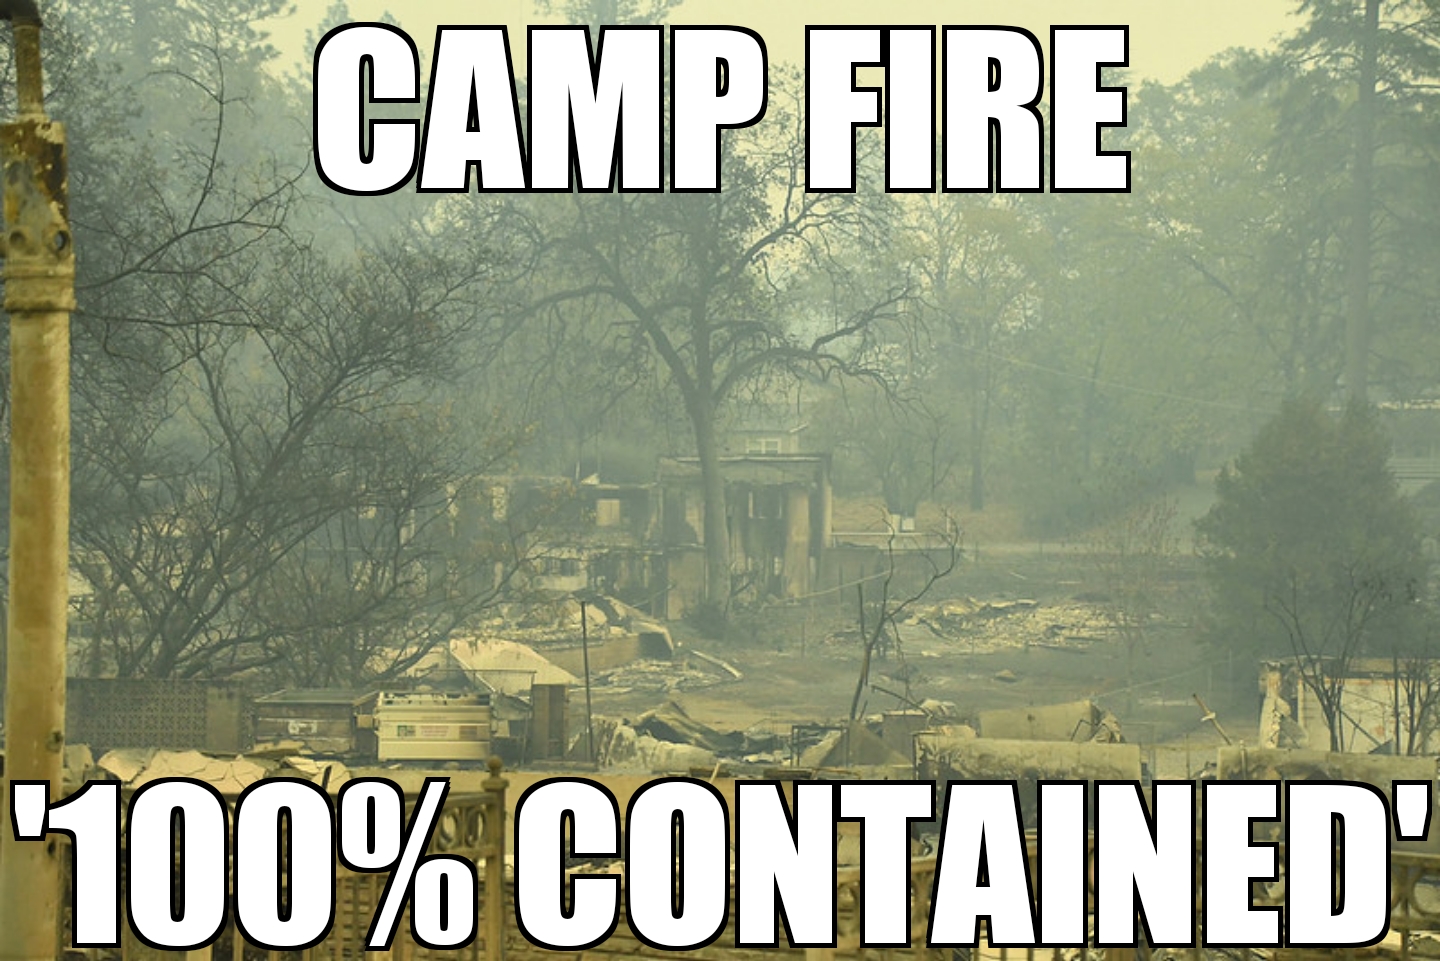 475 still missing in Camp Fire